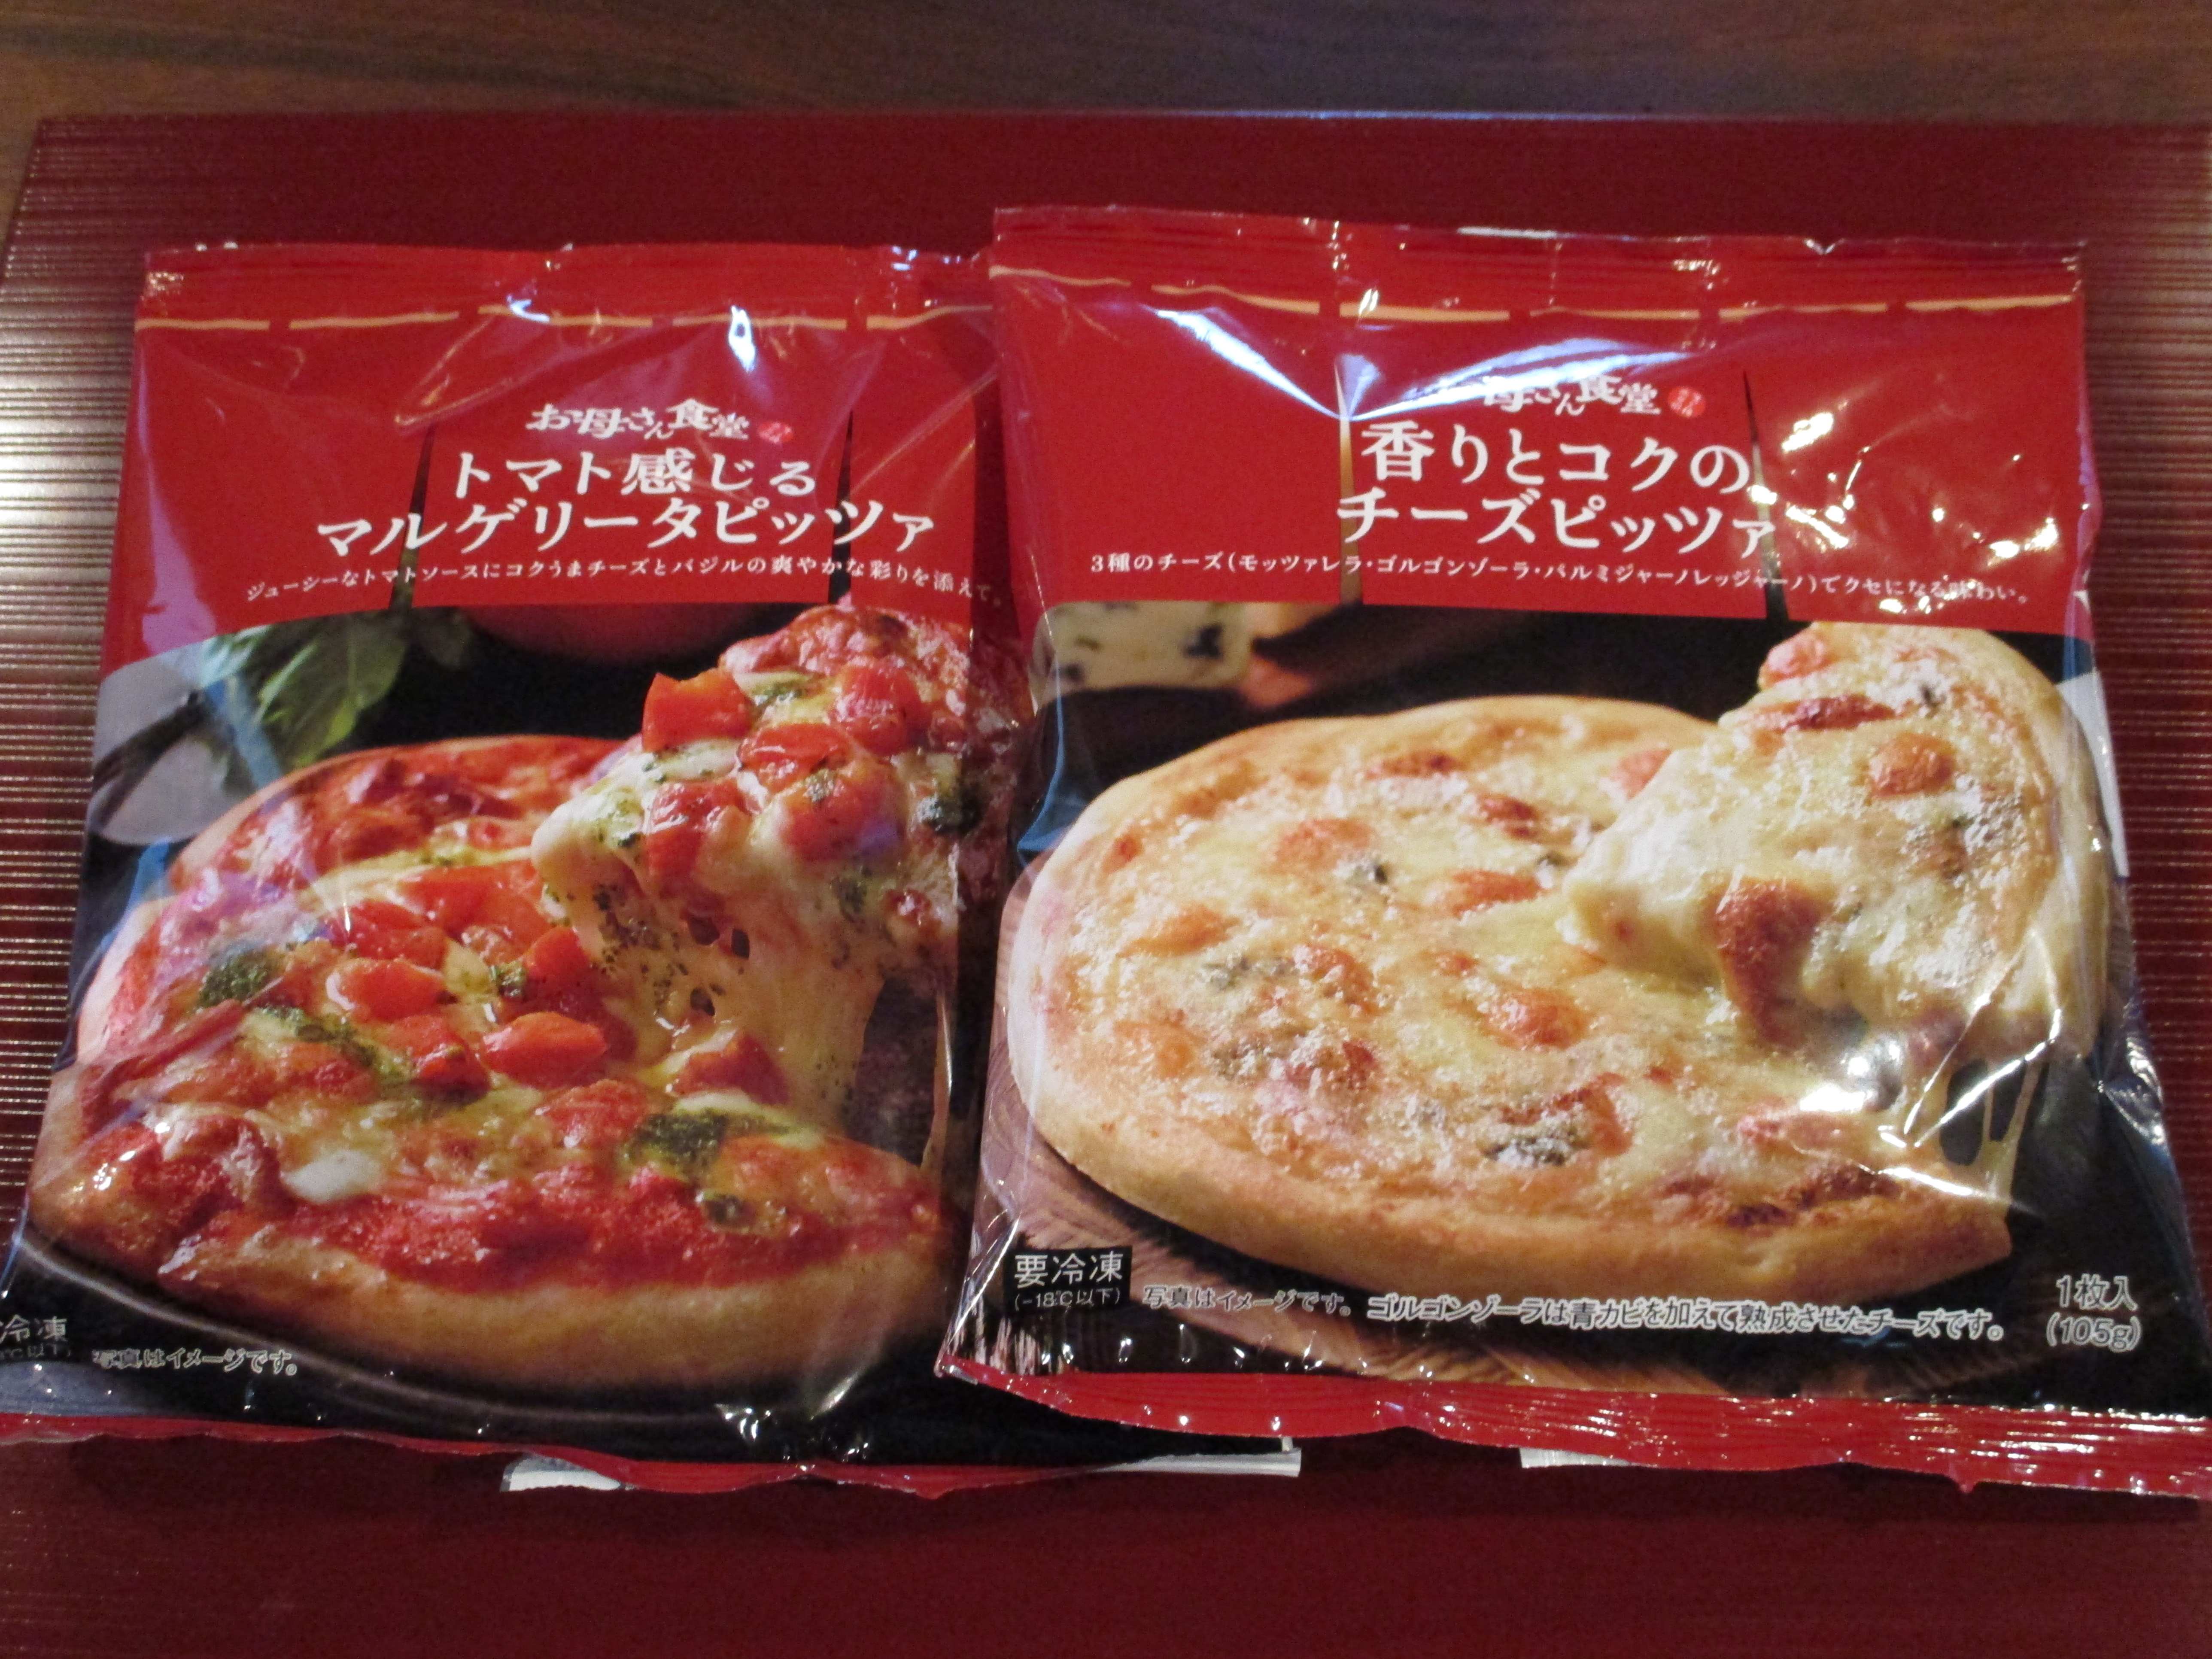 ファミマの冷凍ピザもおいしい 今日も新しいコト発見